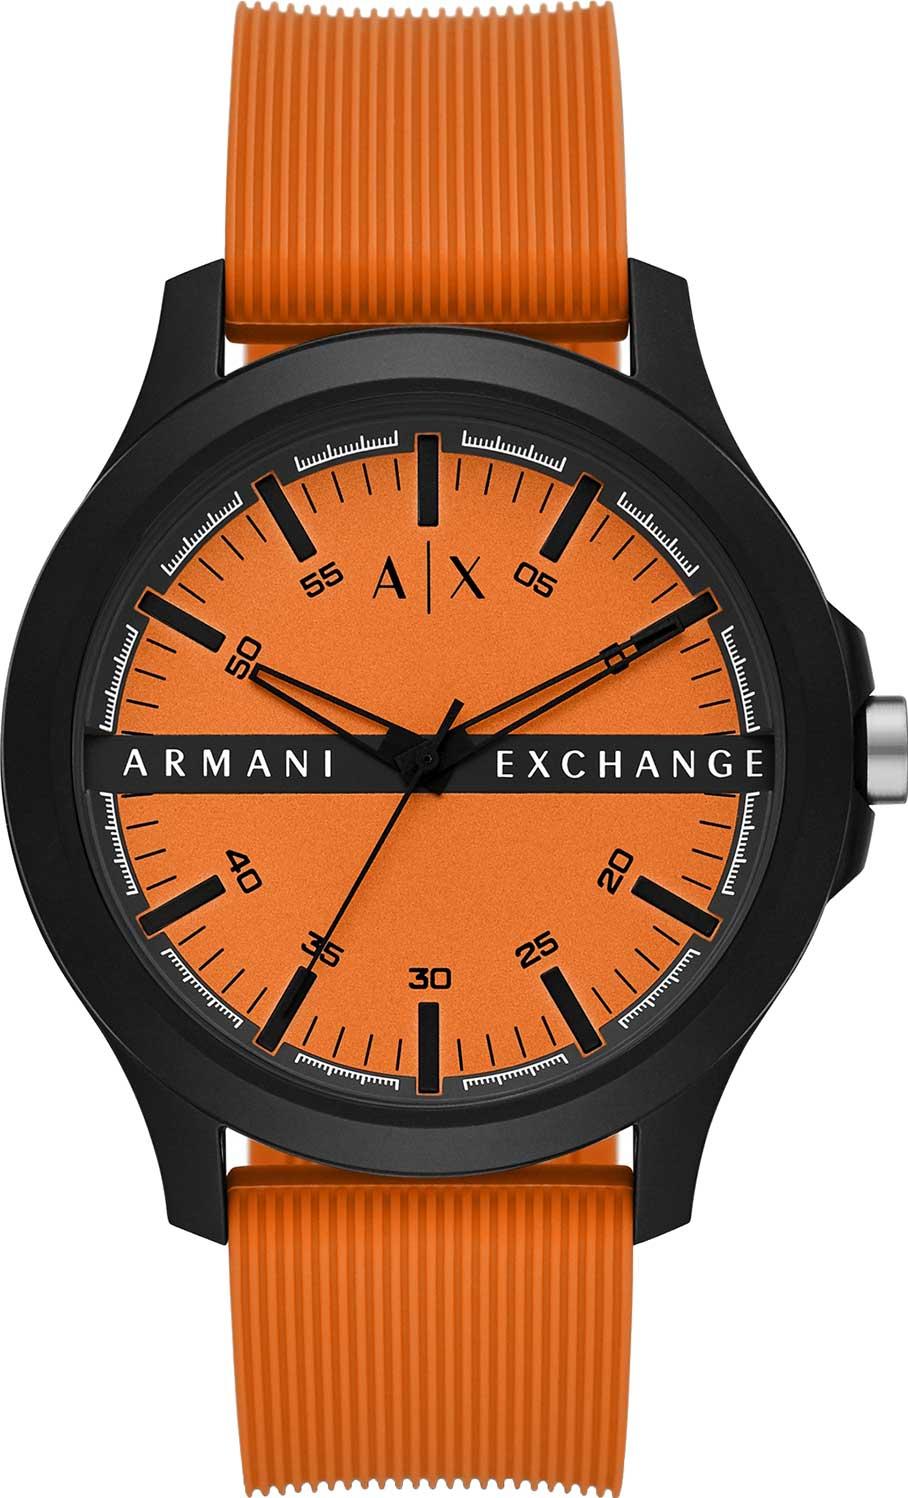 Armani Exchange AX2432